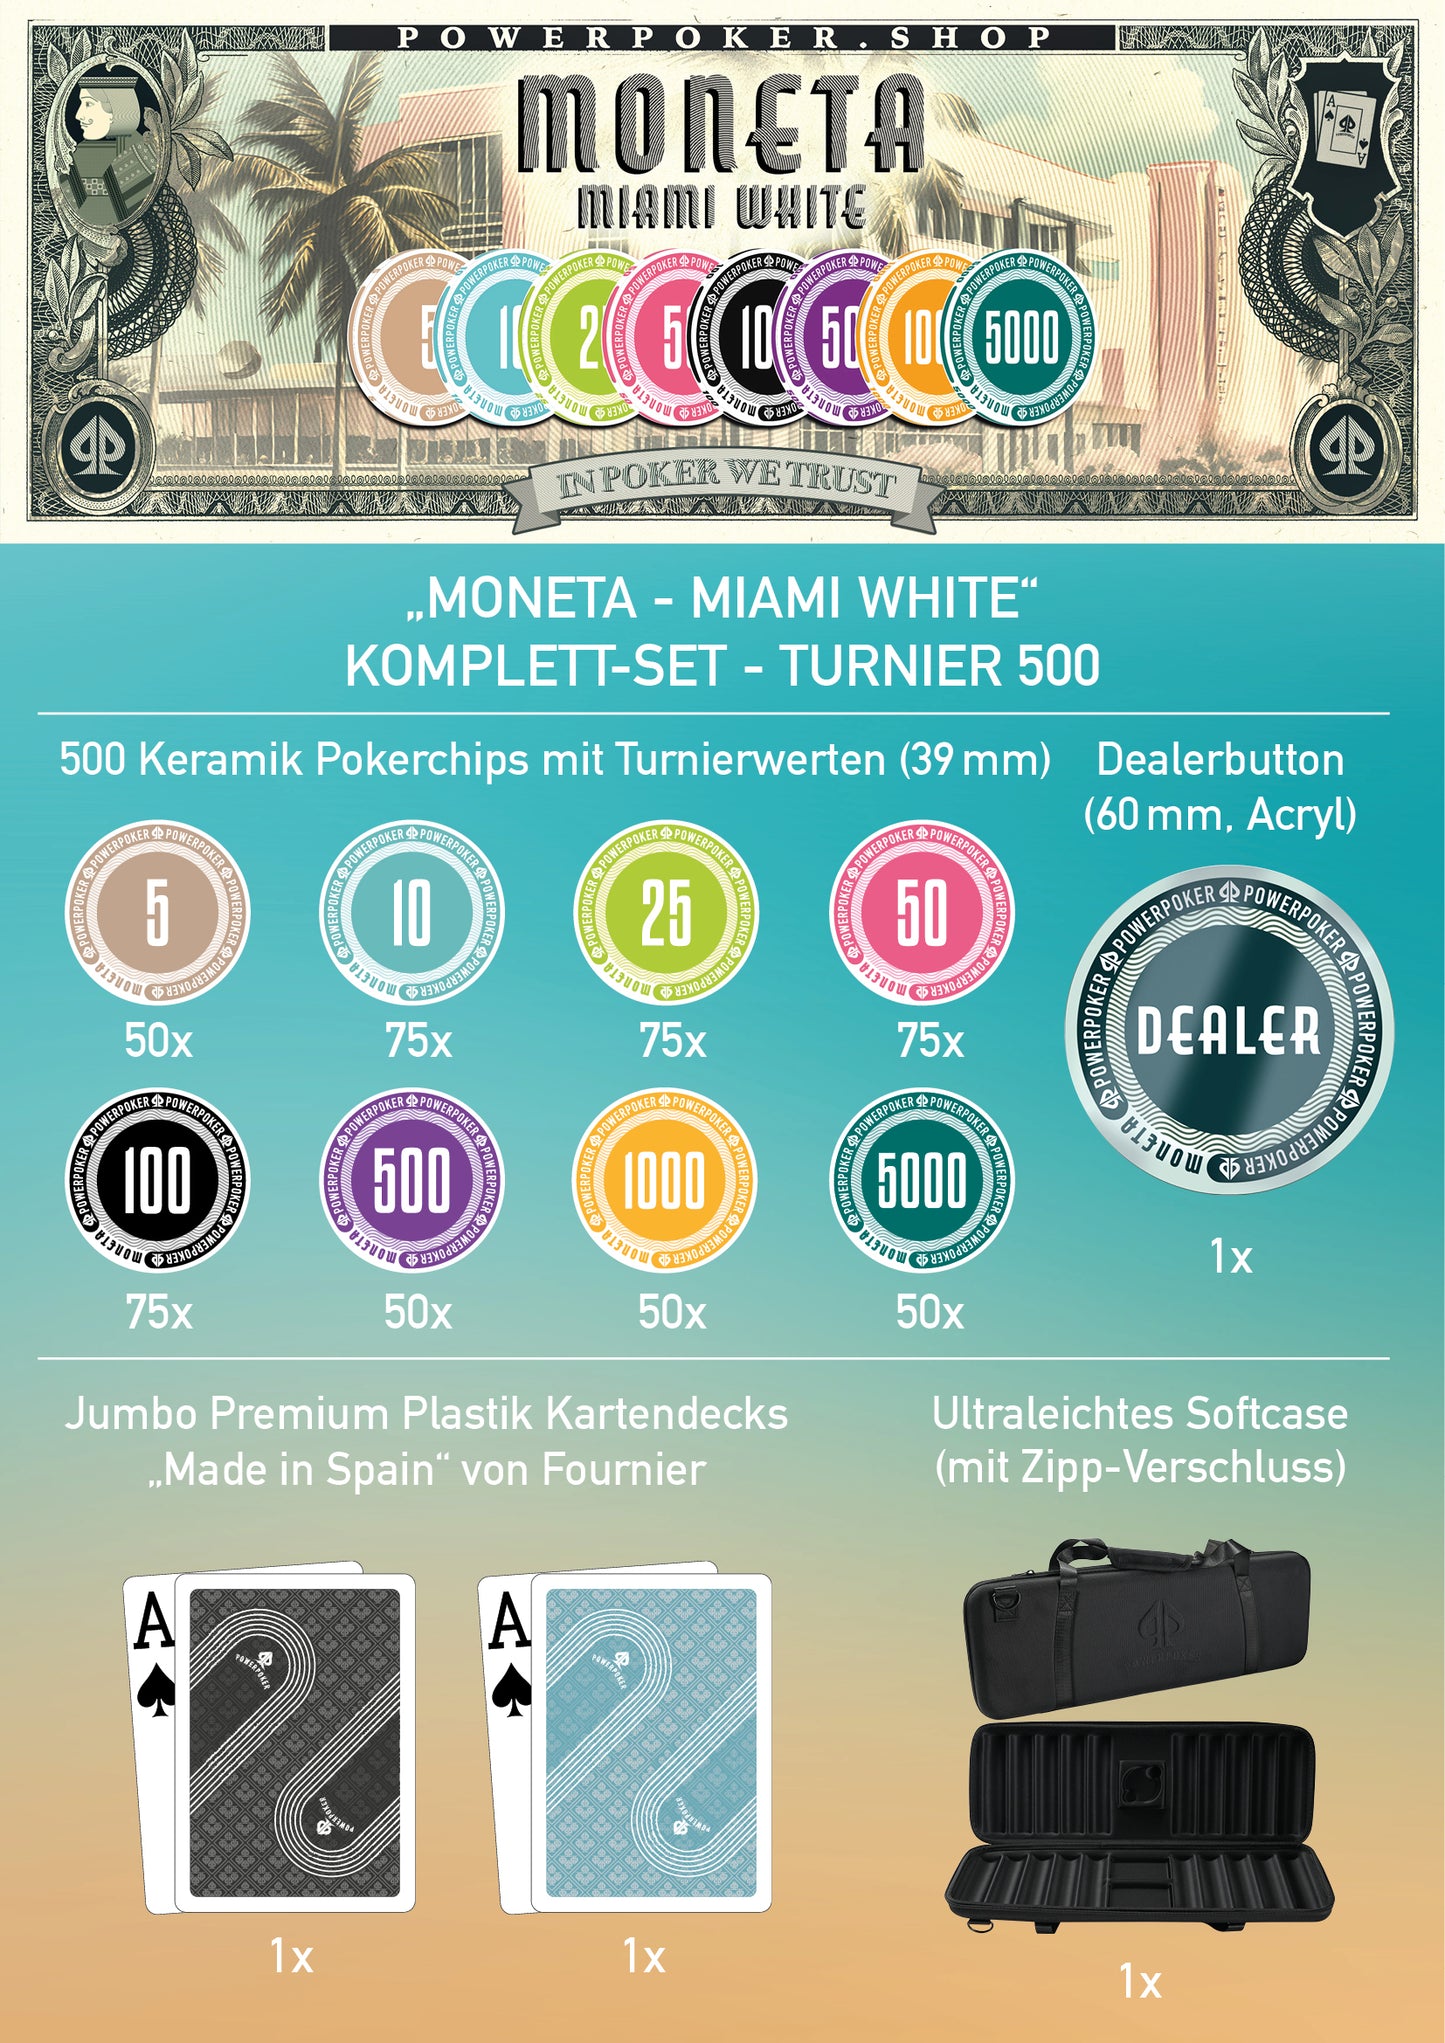 Pokerkoffer Komplett Set - Moneta "Miami White" Turnier 500